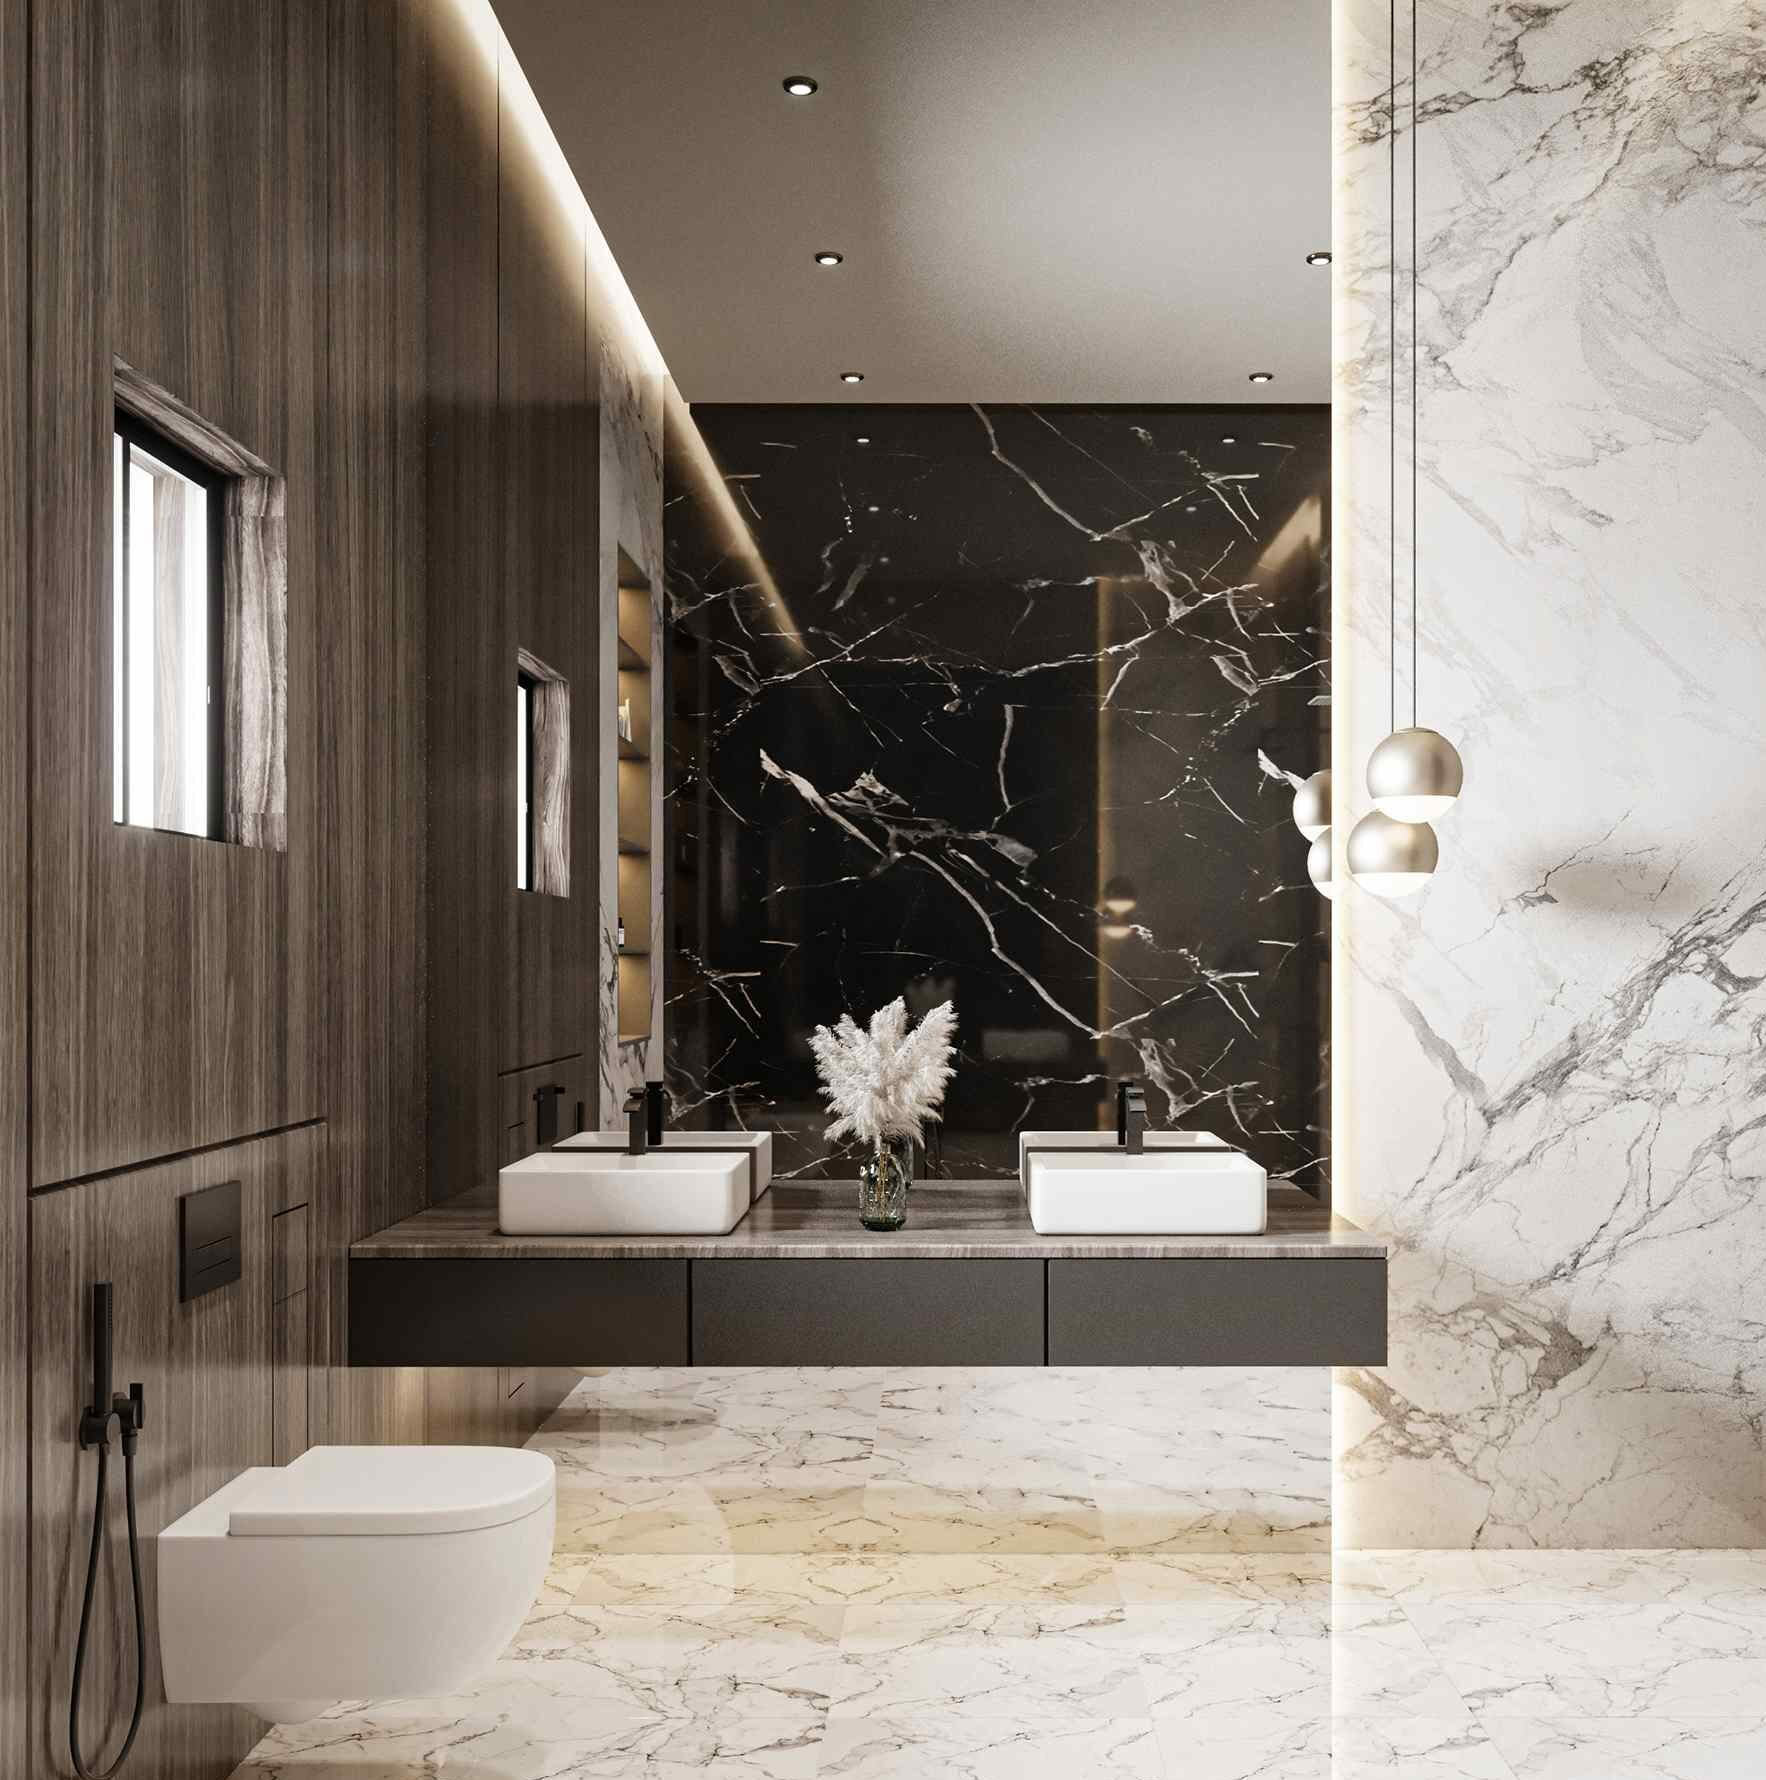 Modern Fall Bathroom Decor Ideas - Taryn Whiteaker Designs